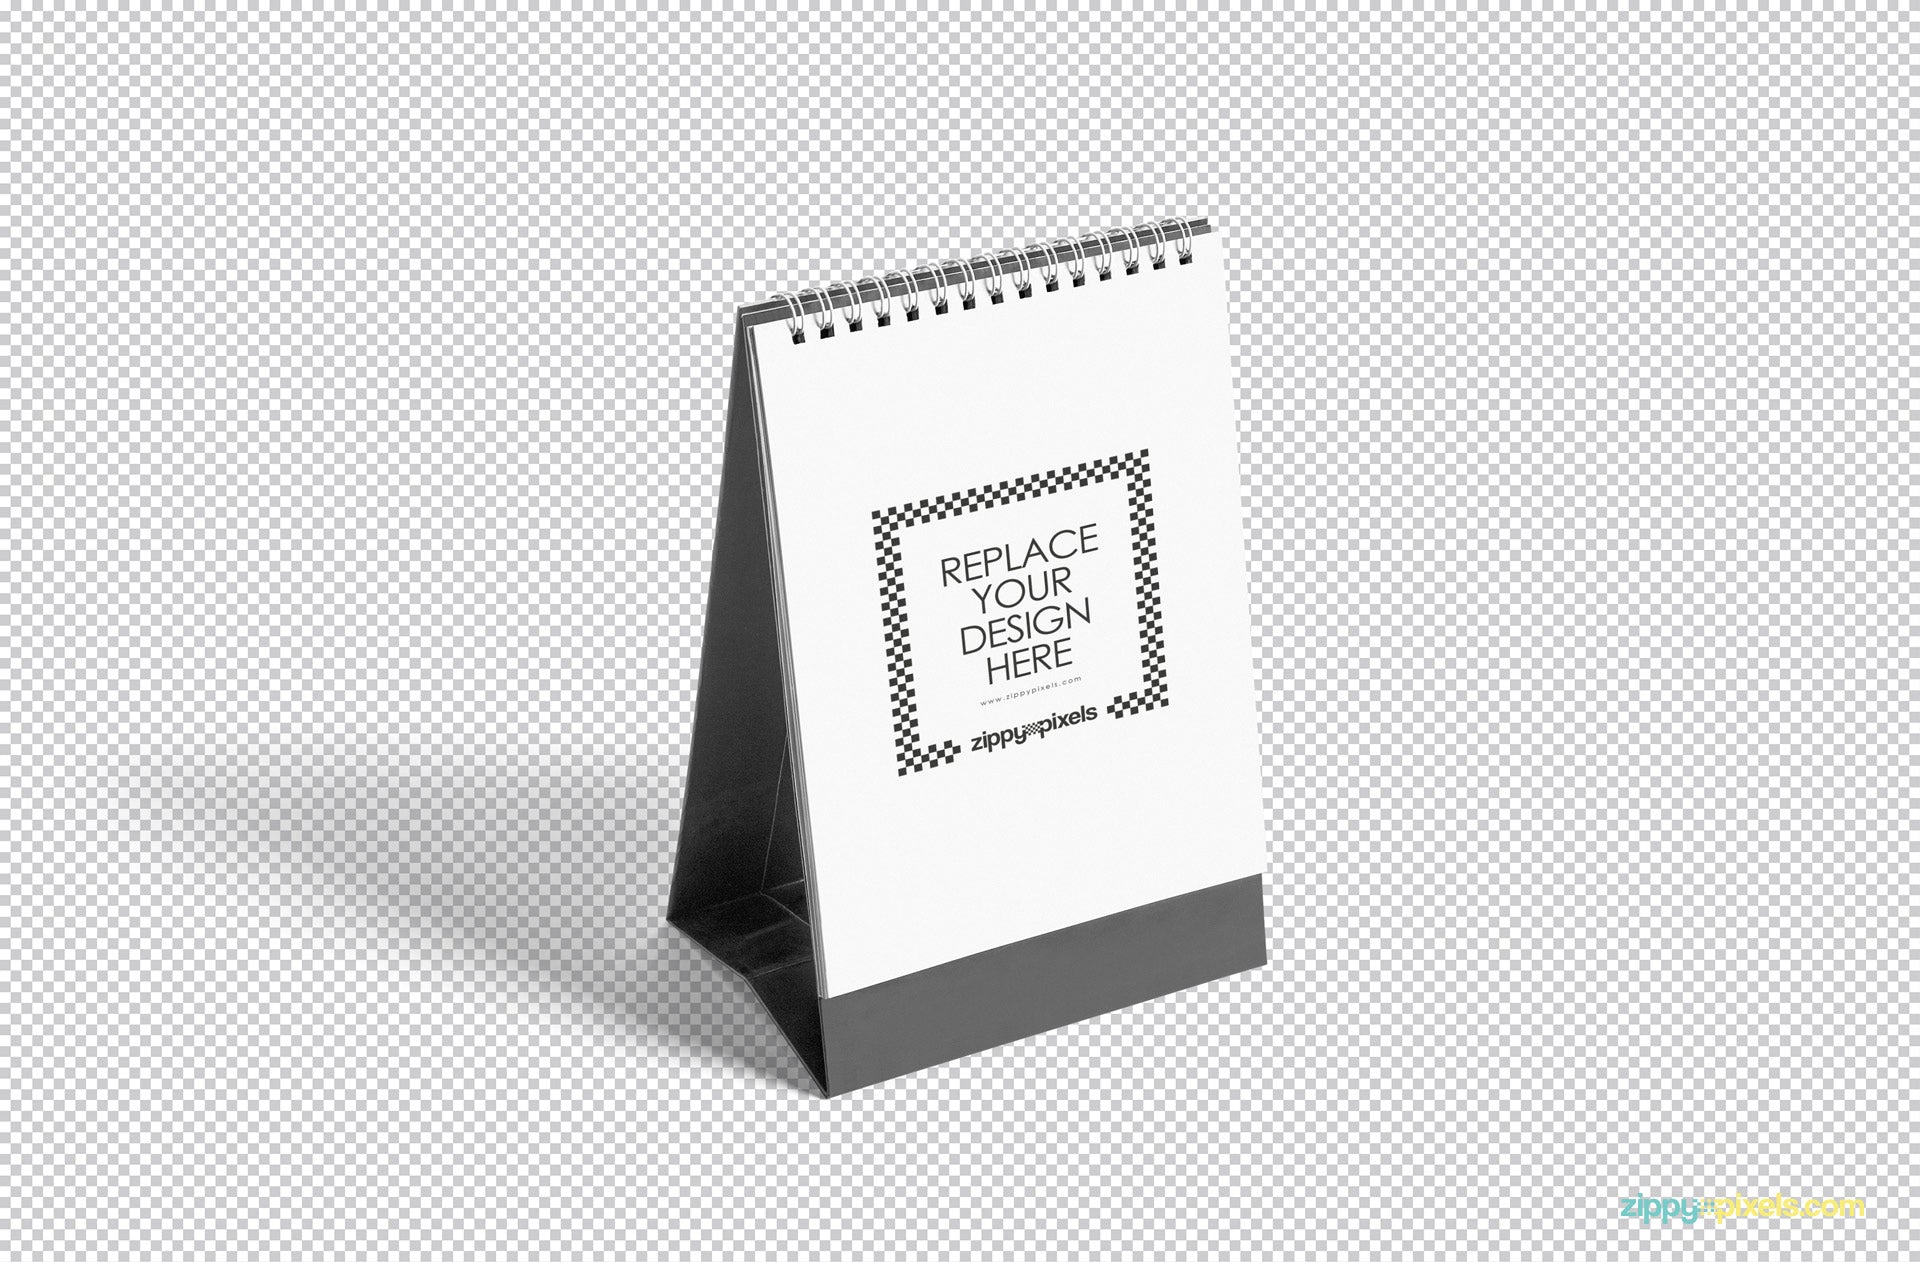 Download Free Desk Calendar Mockup PSD - CreativeBooster